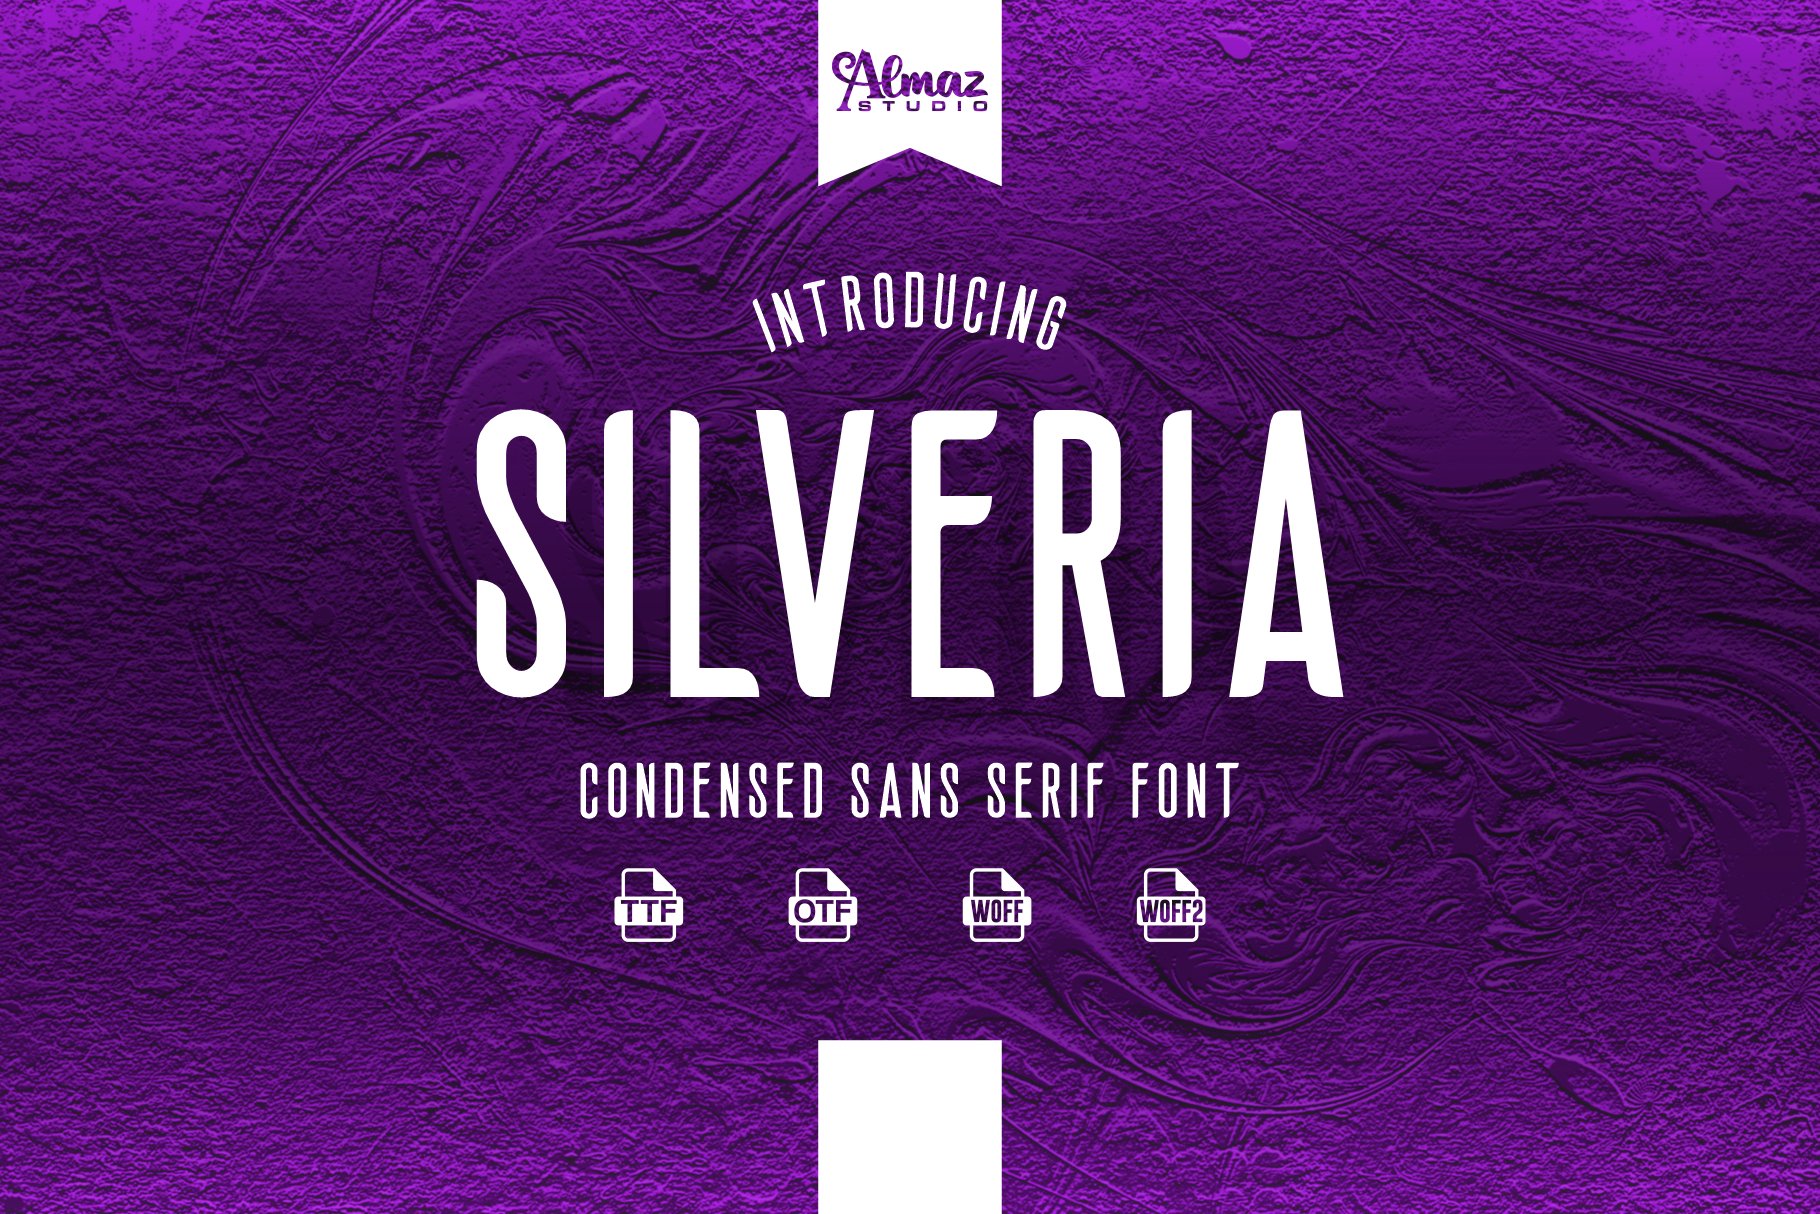 Silveria cover image.